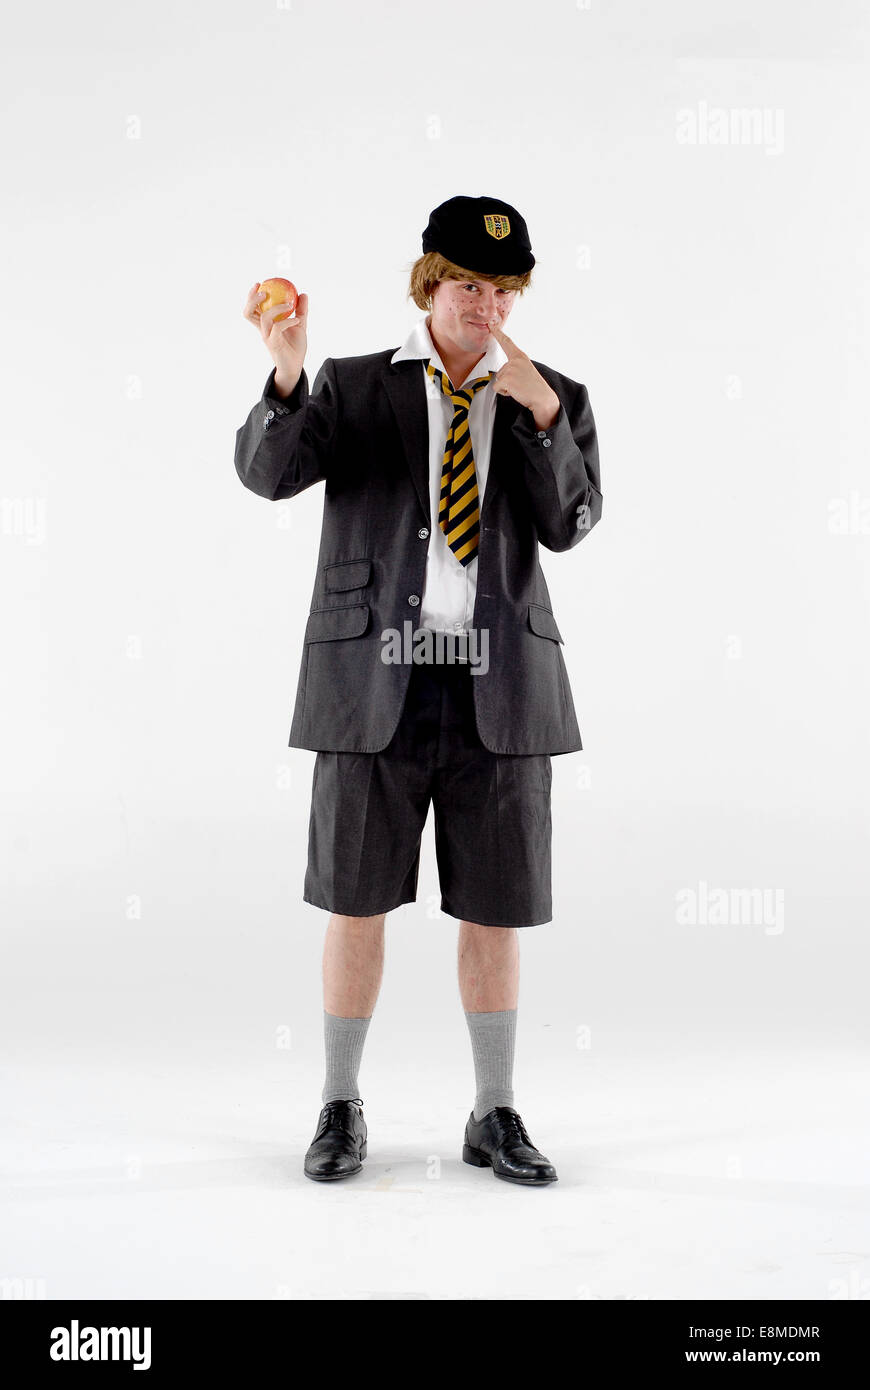 Homme habillé en costume de comédie costumée comme un vilain garçon de l' école, dans l'uniforme scolaire avec chapeau, cravate, short et contre le  blanc Photo Stock - Alamy